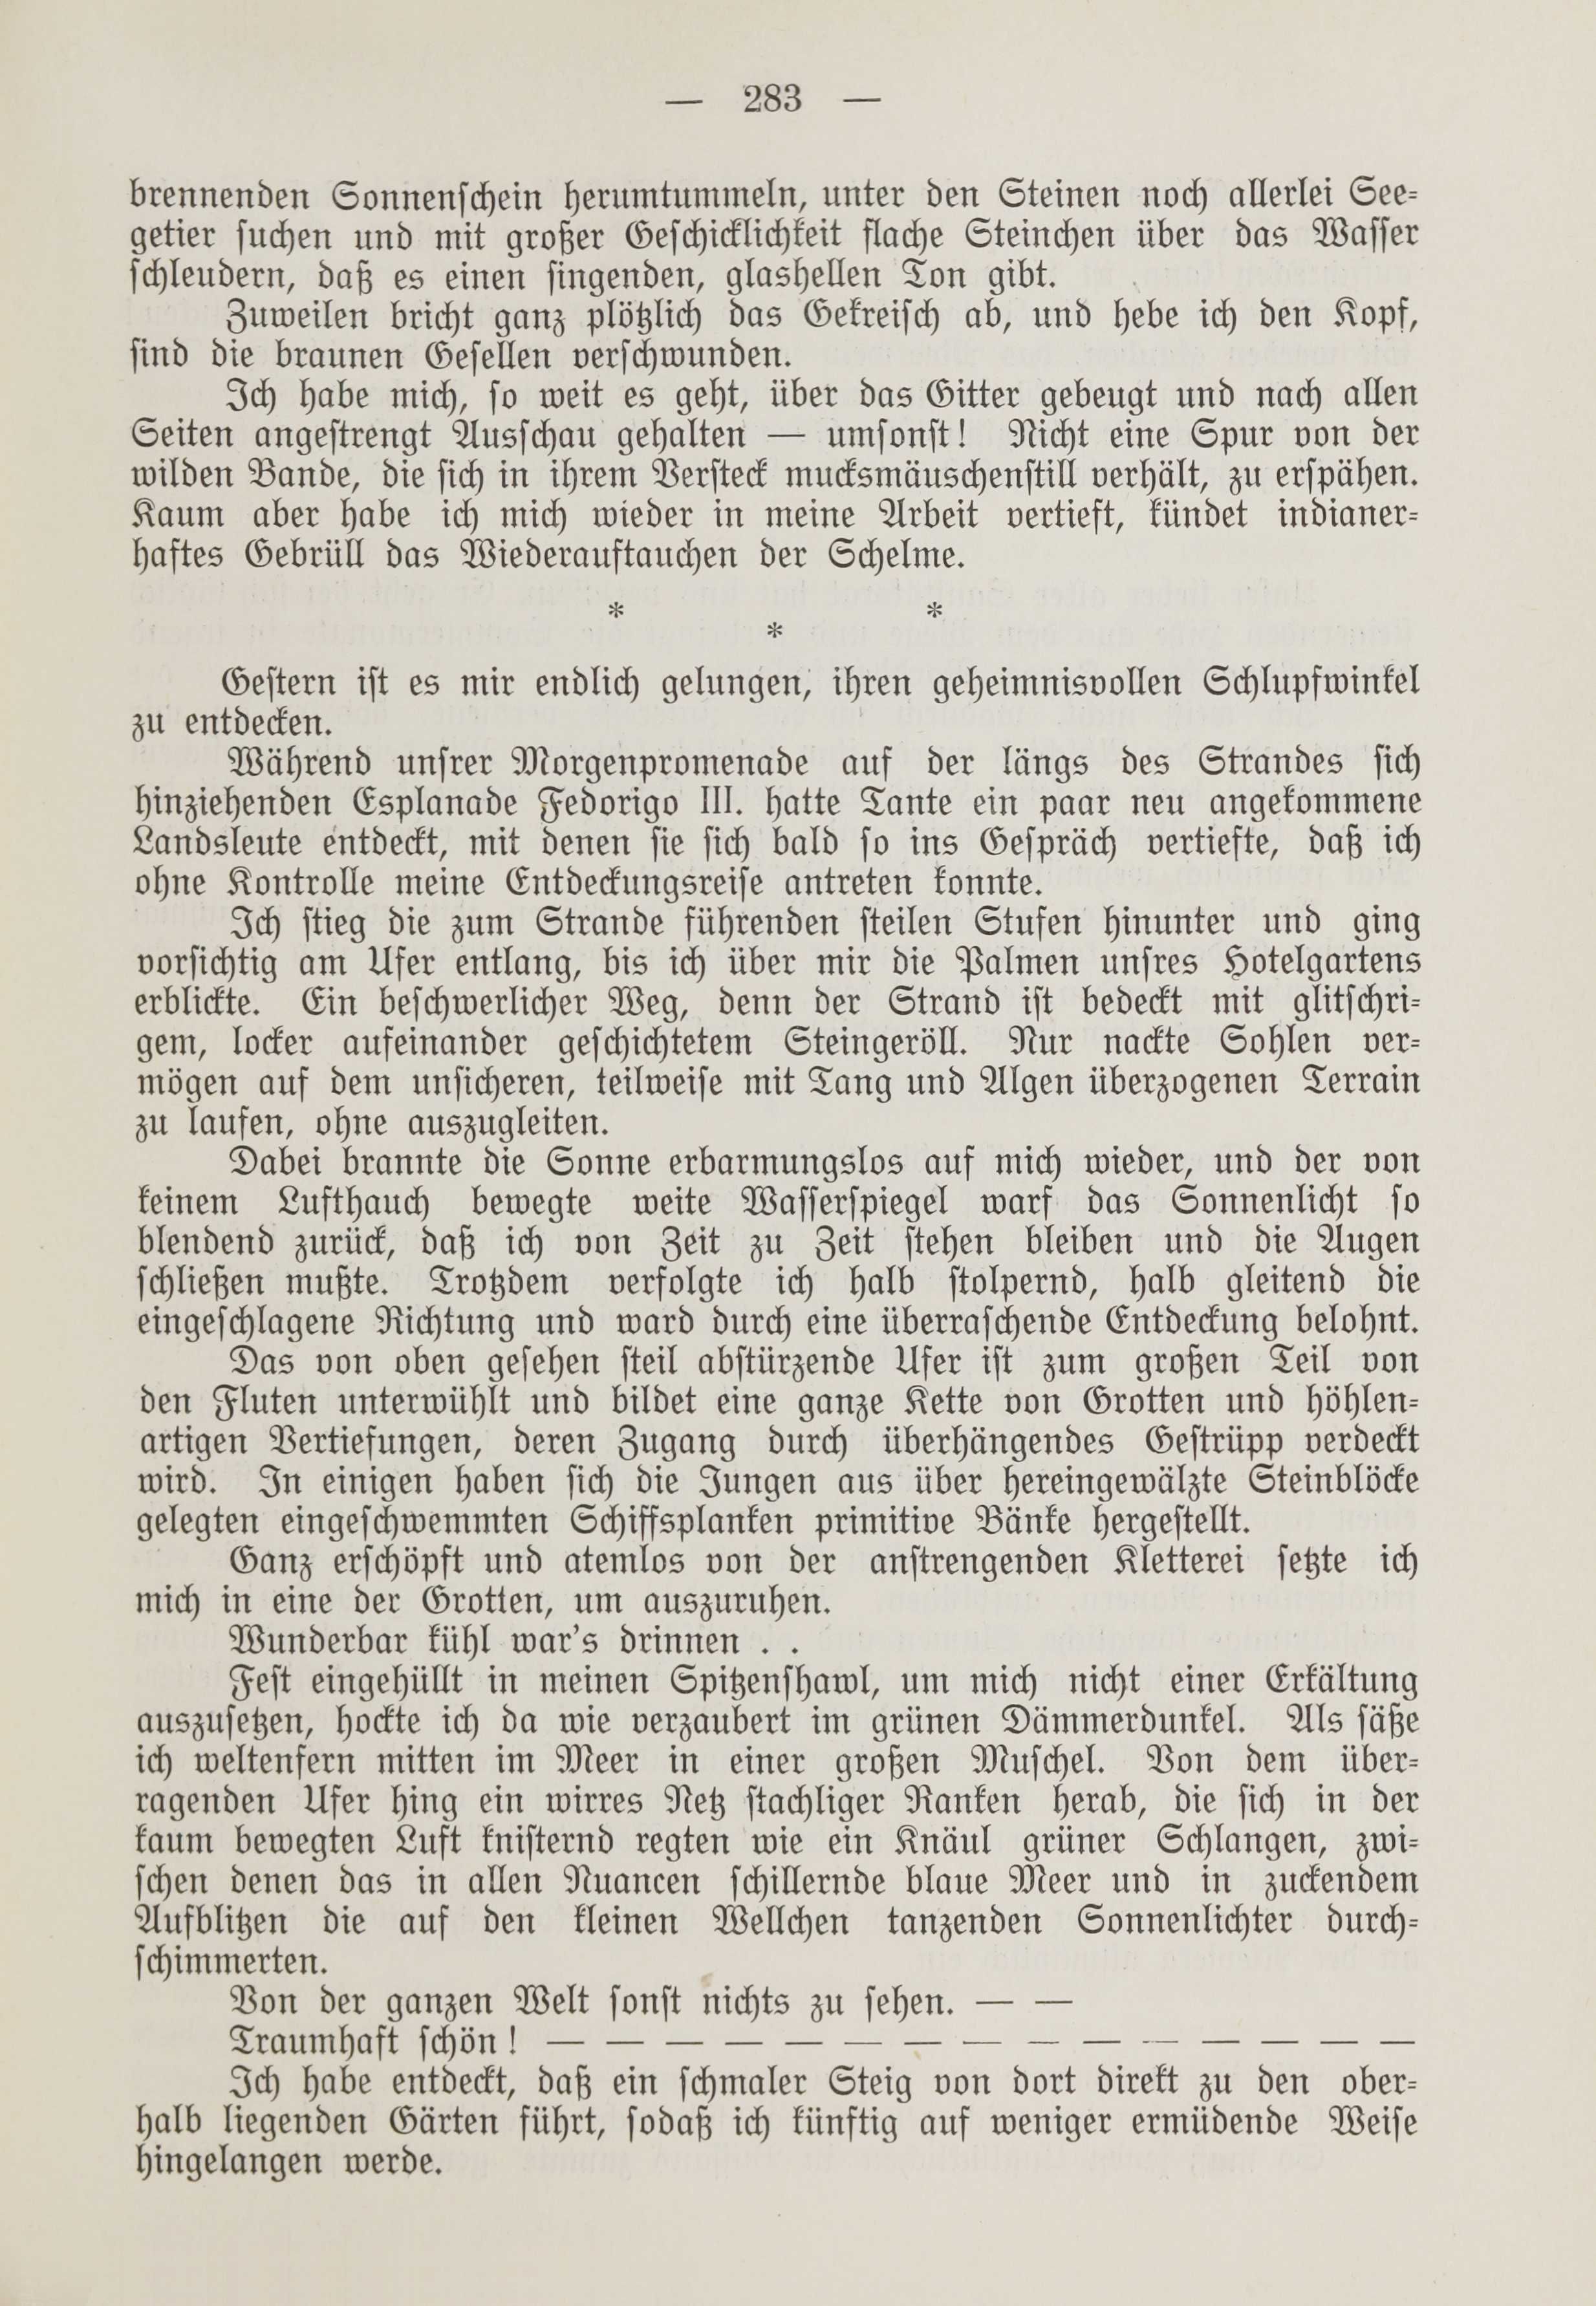 Deutsche Monatsschrift für Russland [1] (1912) | 291. (283) Main body of text